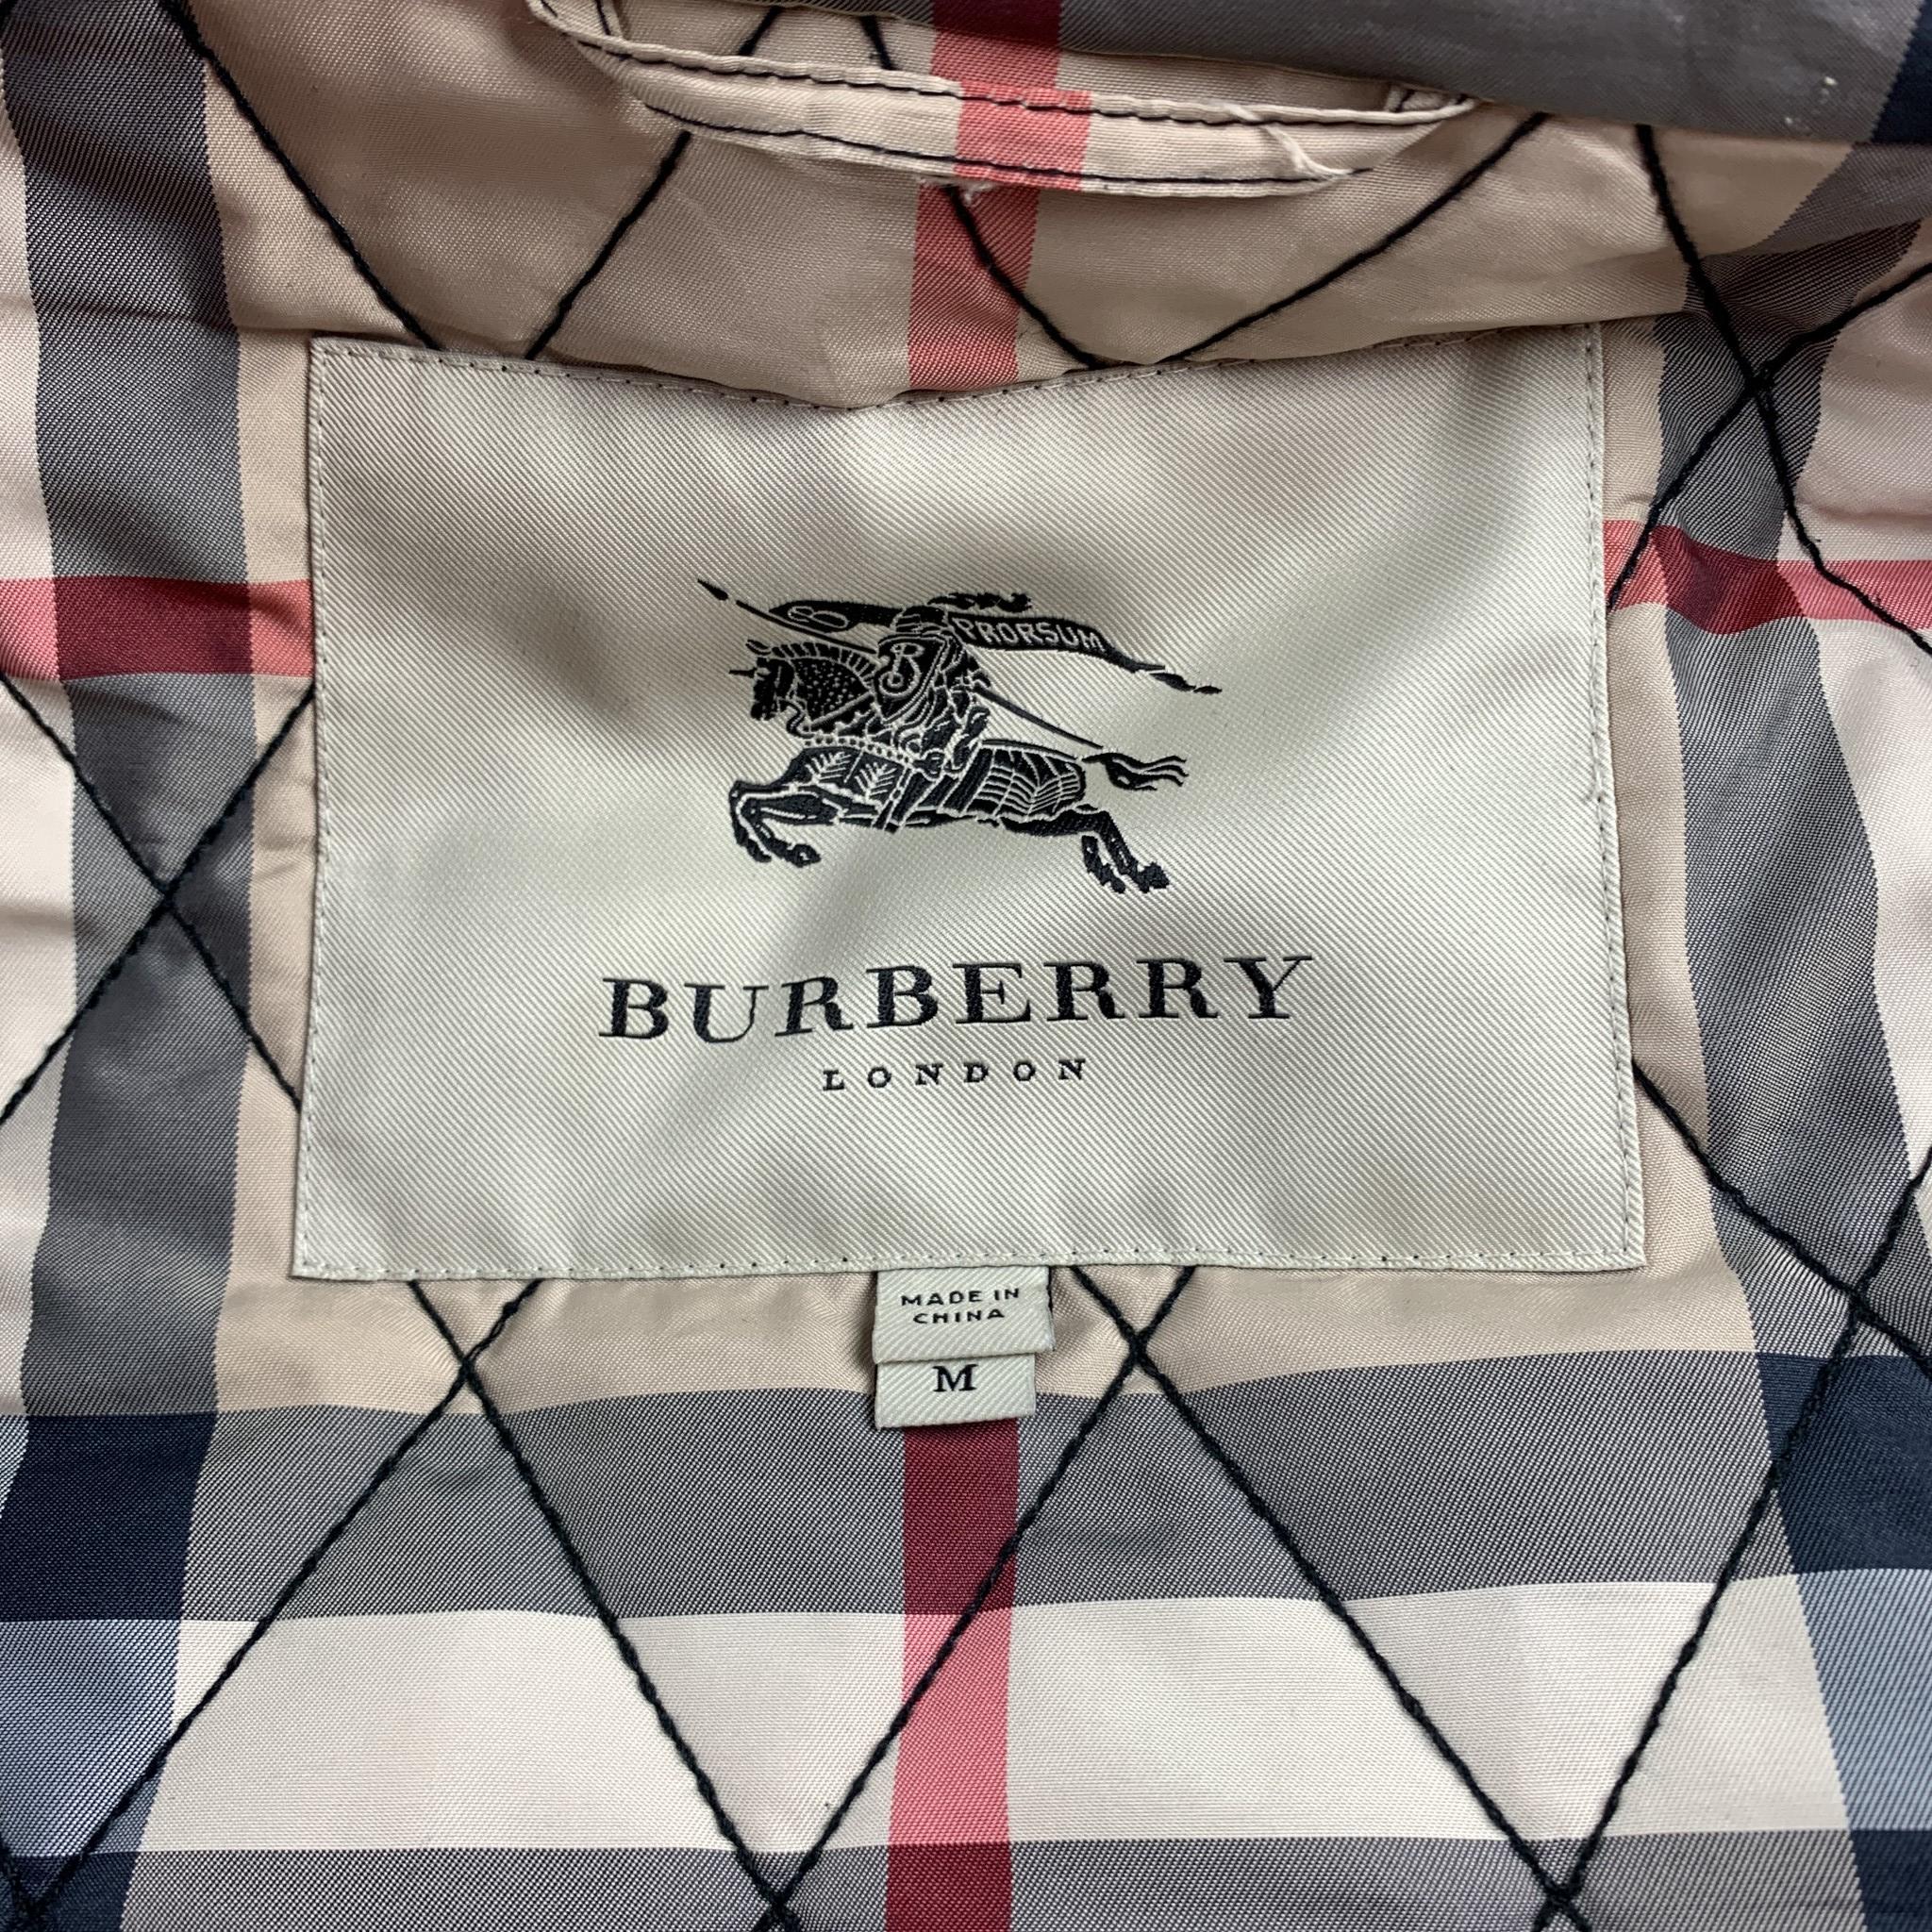 BURBERRY LONDON Size M Navy Nylon / Cotton Zip & Buttons Detachable Jacket Coat 2